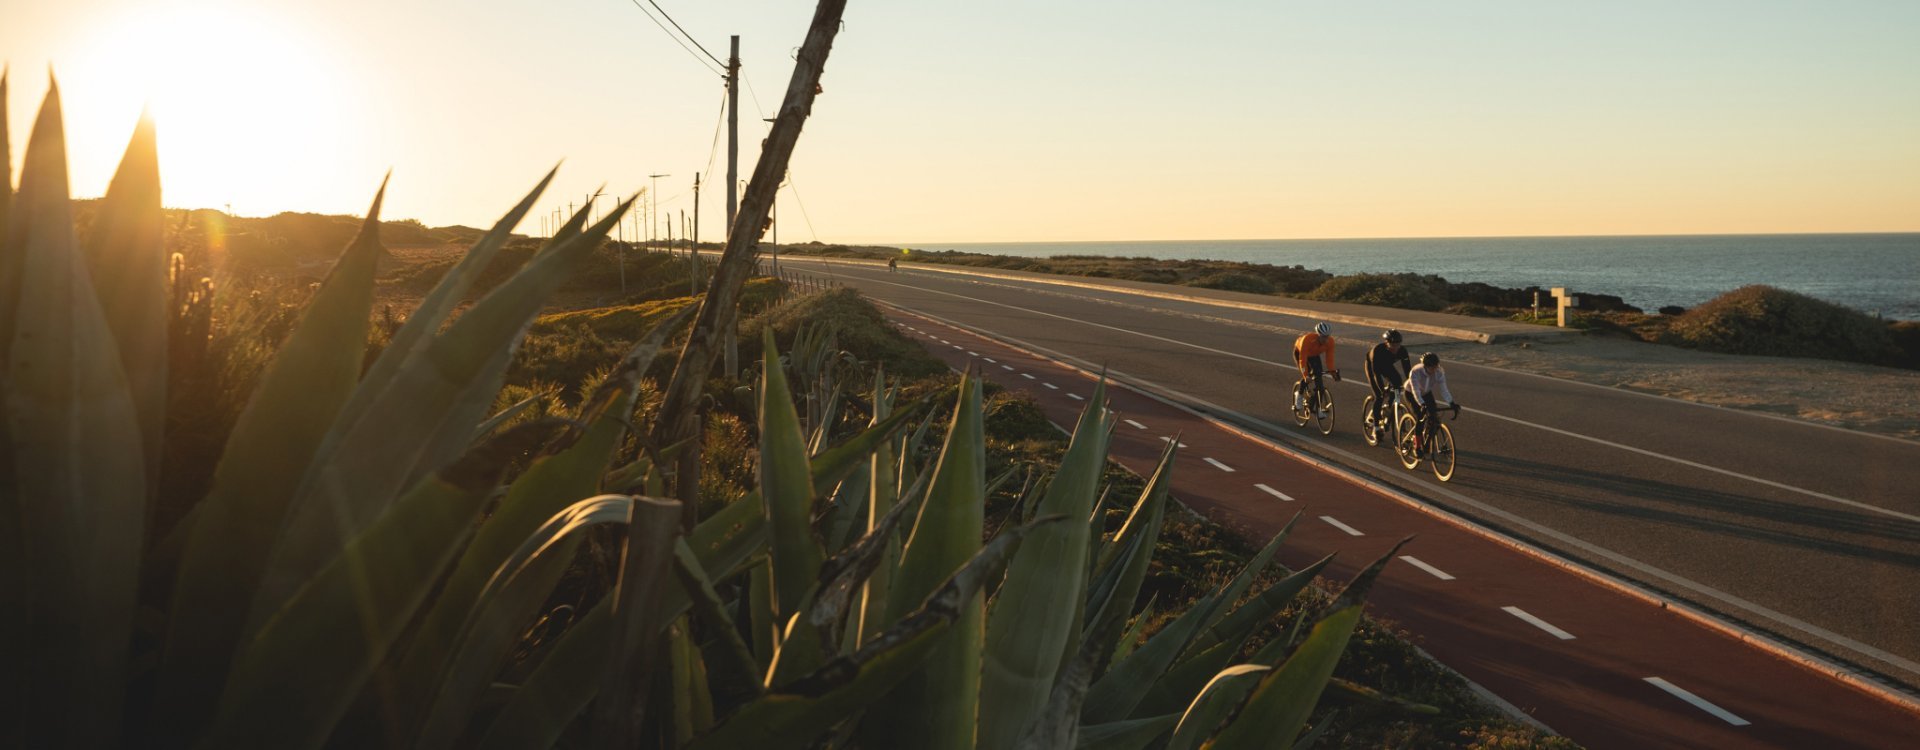 Laura, Markus et Sergej de bc roulent sur une route côtière avec leurs vélos de route. En arrière-plan, le soleil se couche.